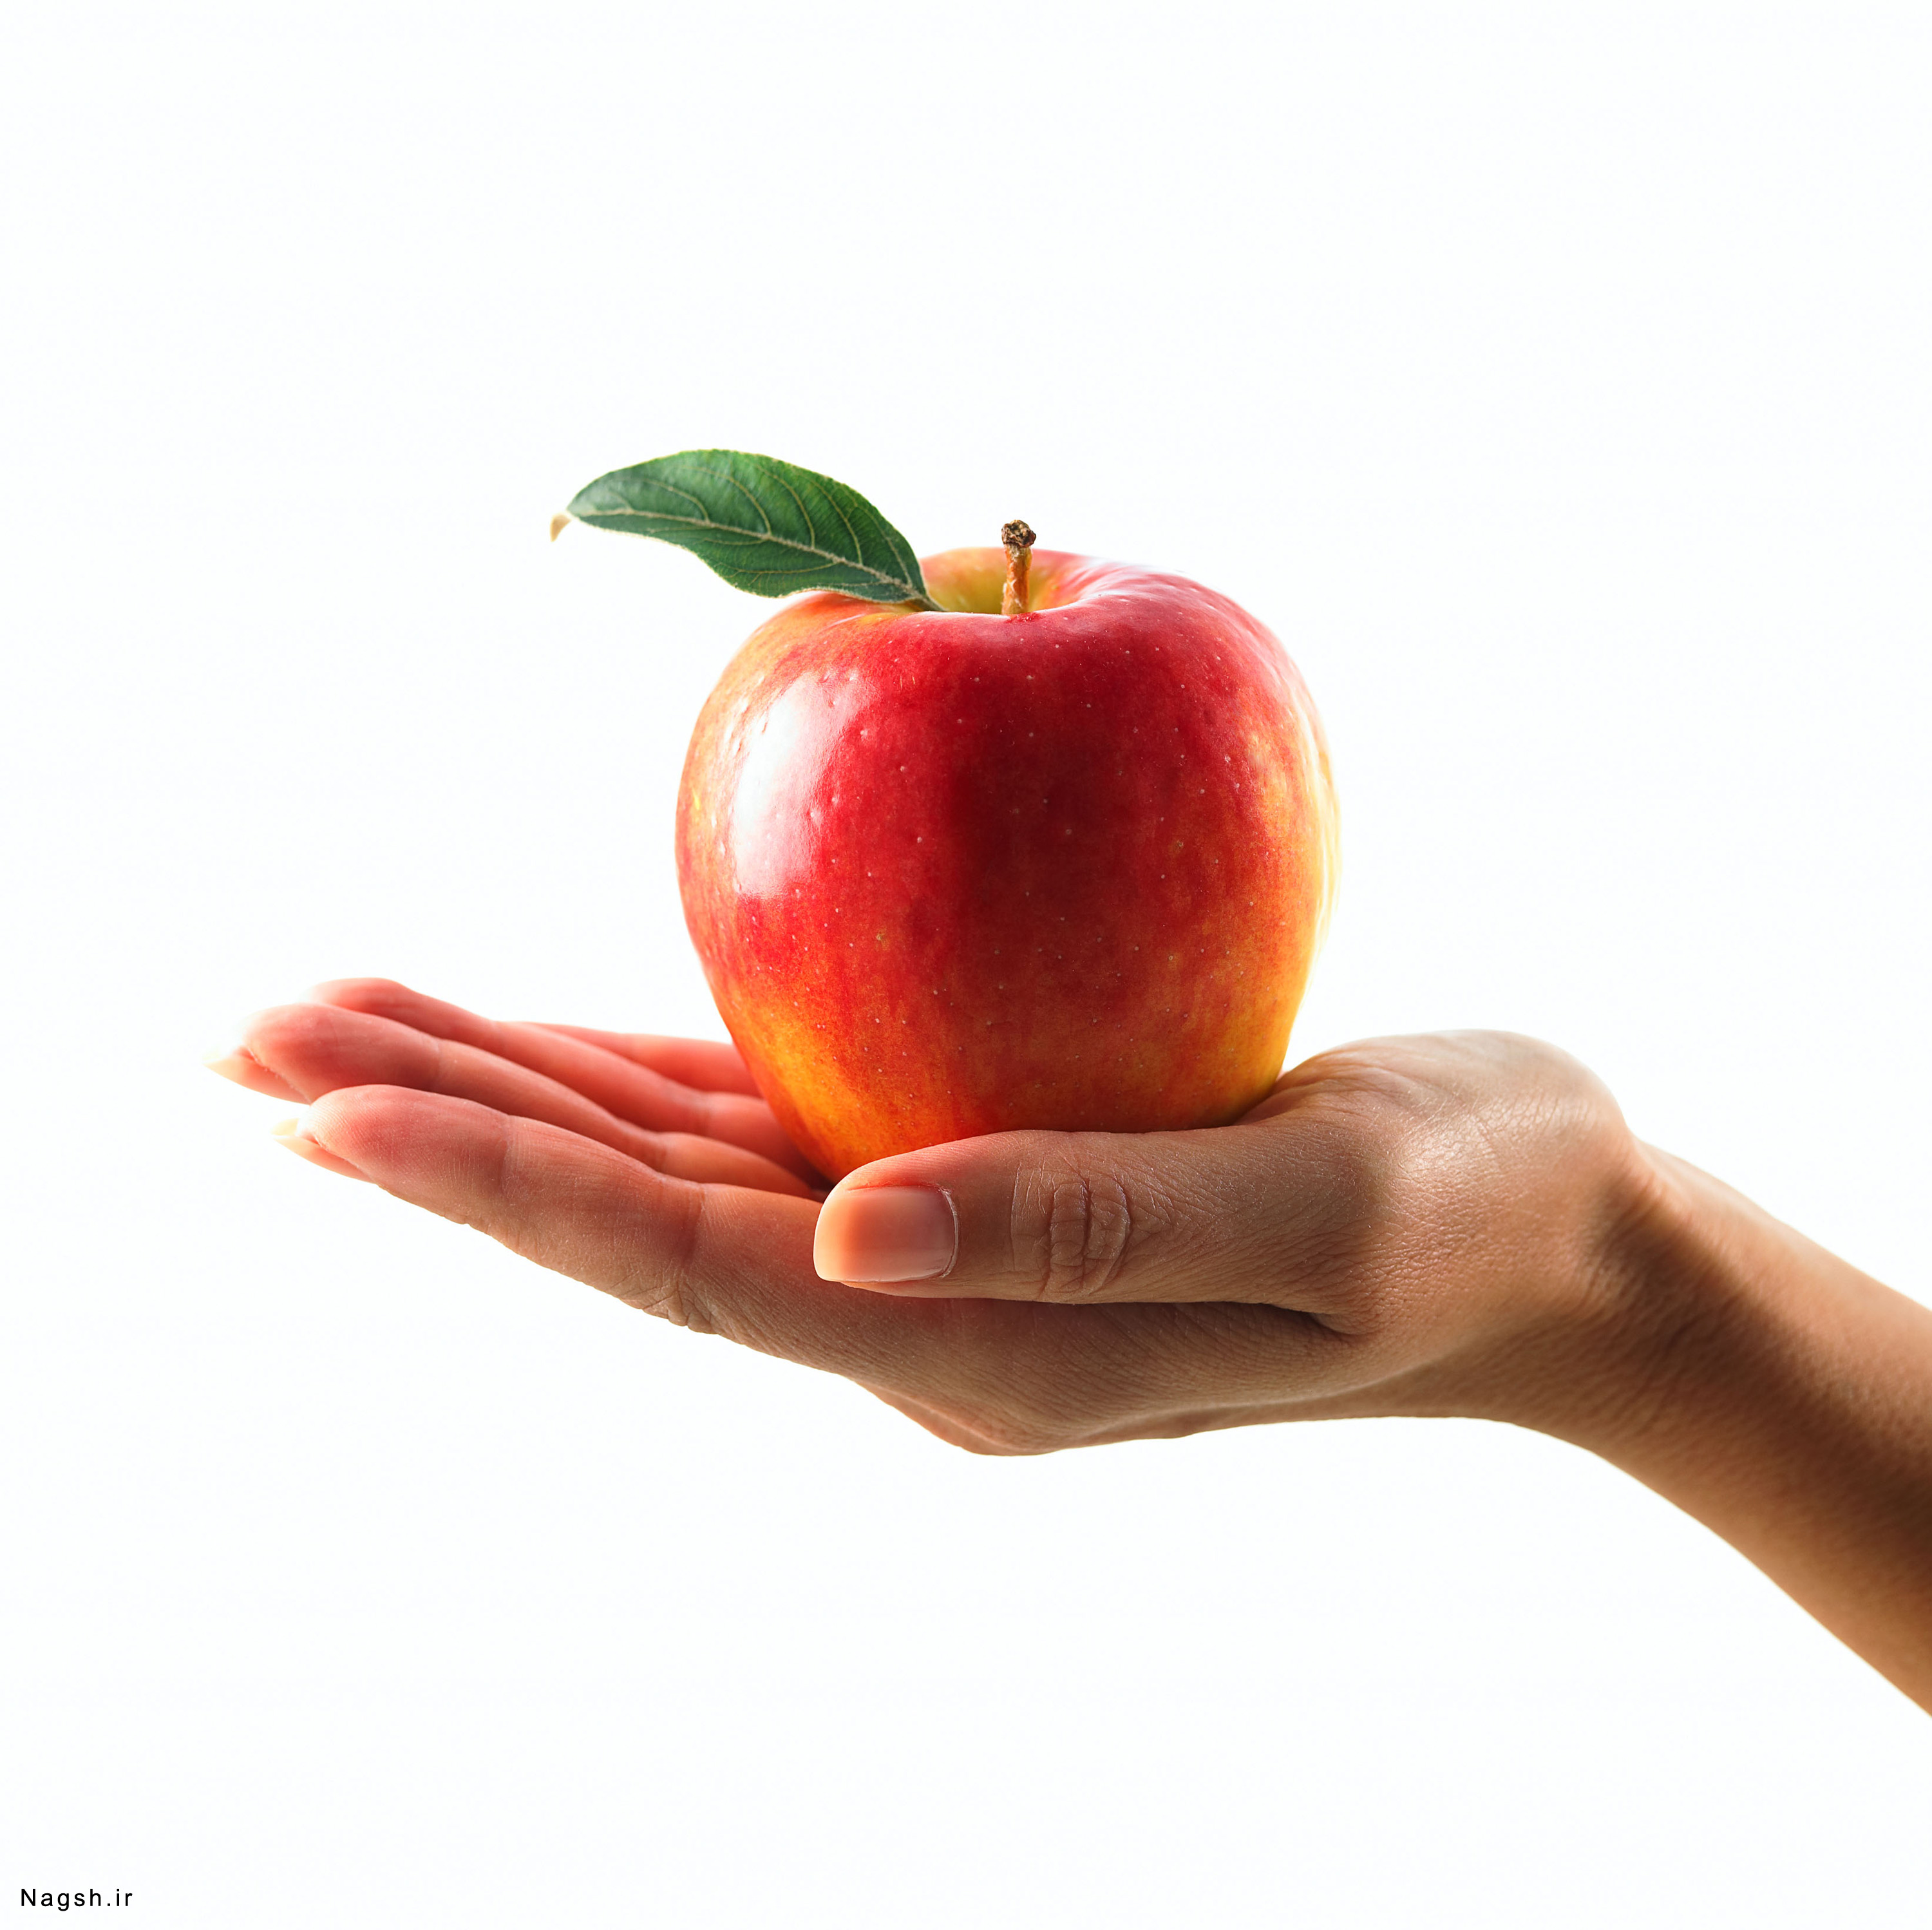 Держите в руках сладкое. Яблоко в руке. Рука держит яблоко. Предмет в руке. Предмет на ладони.